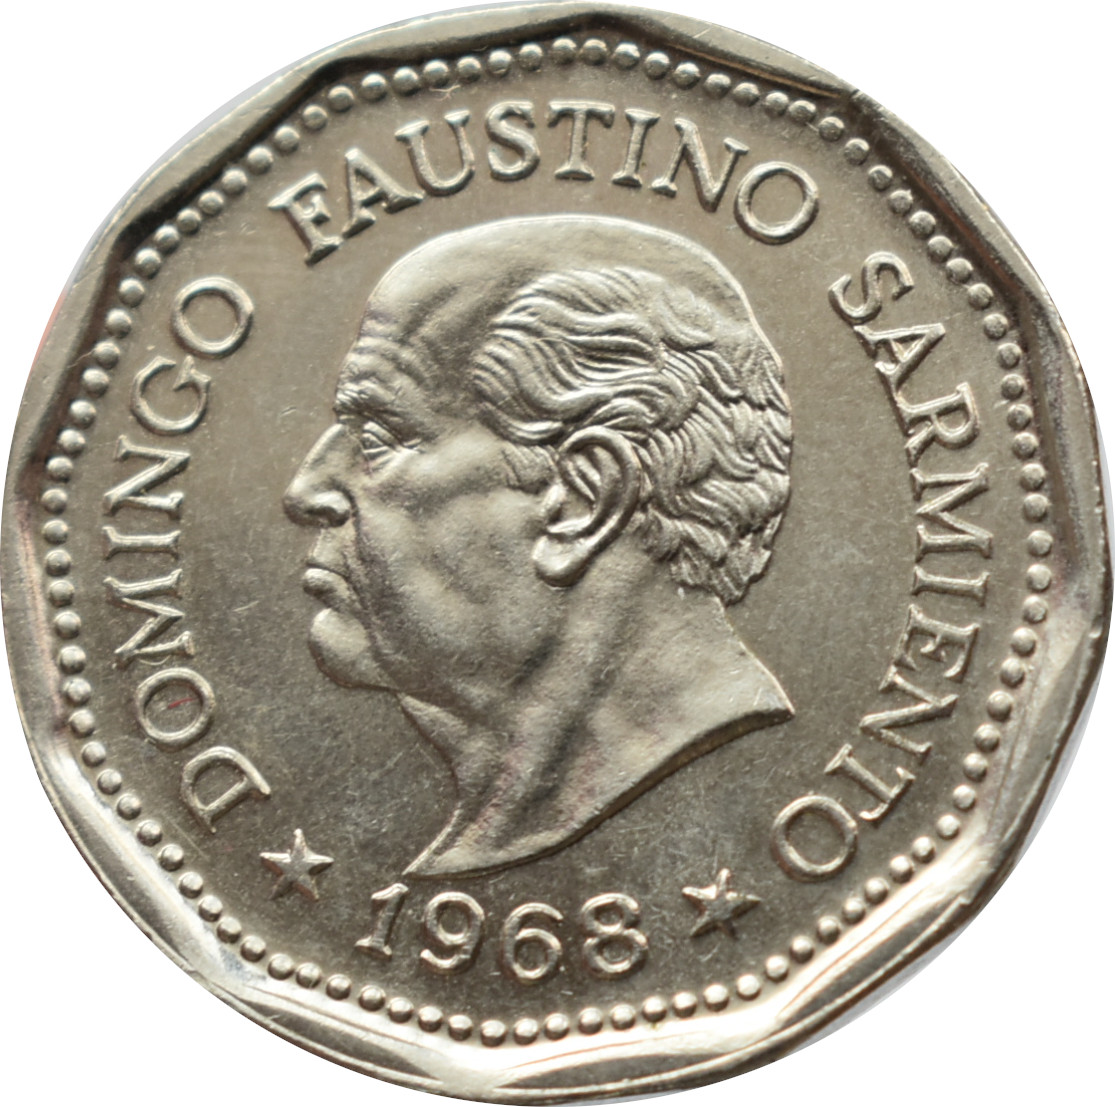 Argentína 25 Pesos 1968